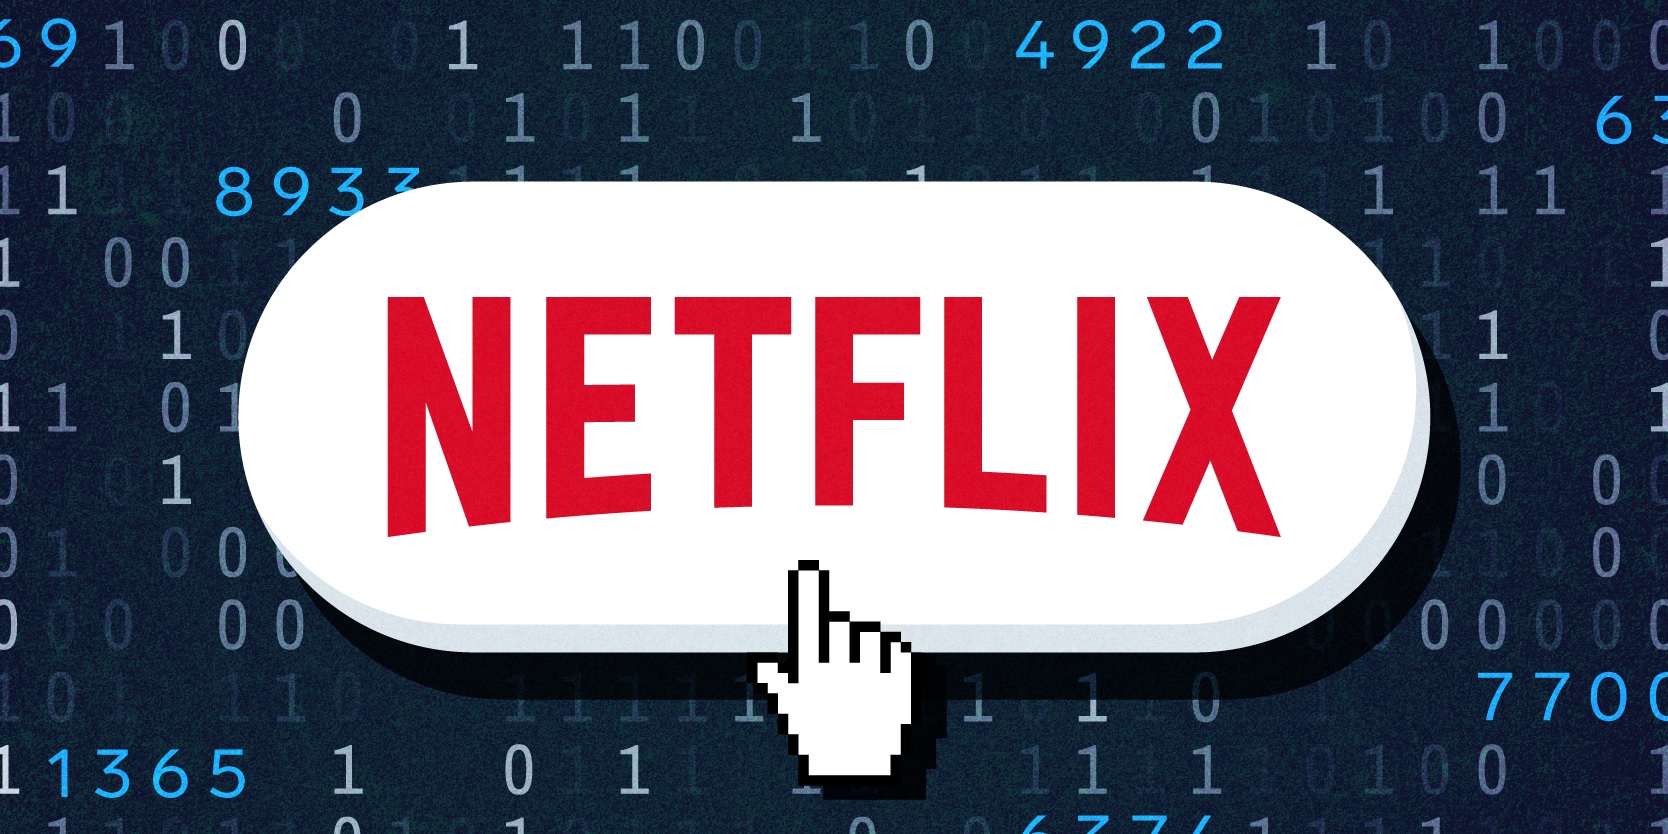 Como inserir códigos secretos na Netflix que liberam categorias ocultas -  Softwares, Downloads